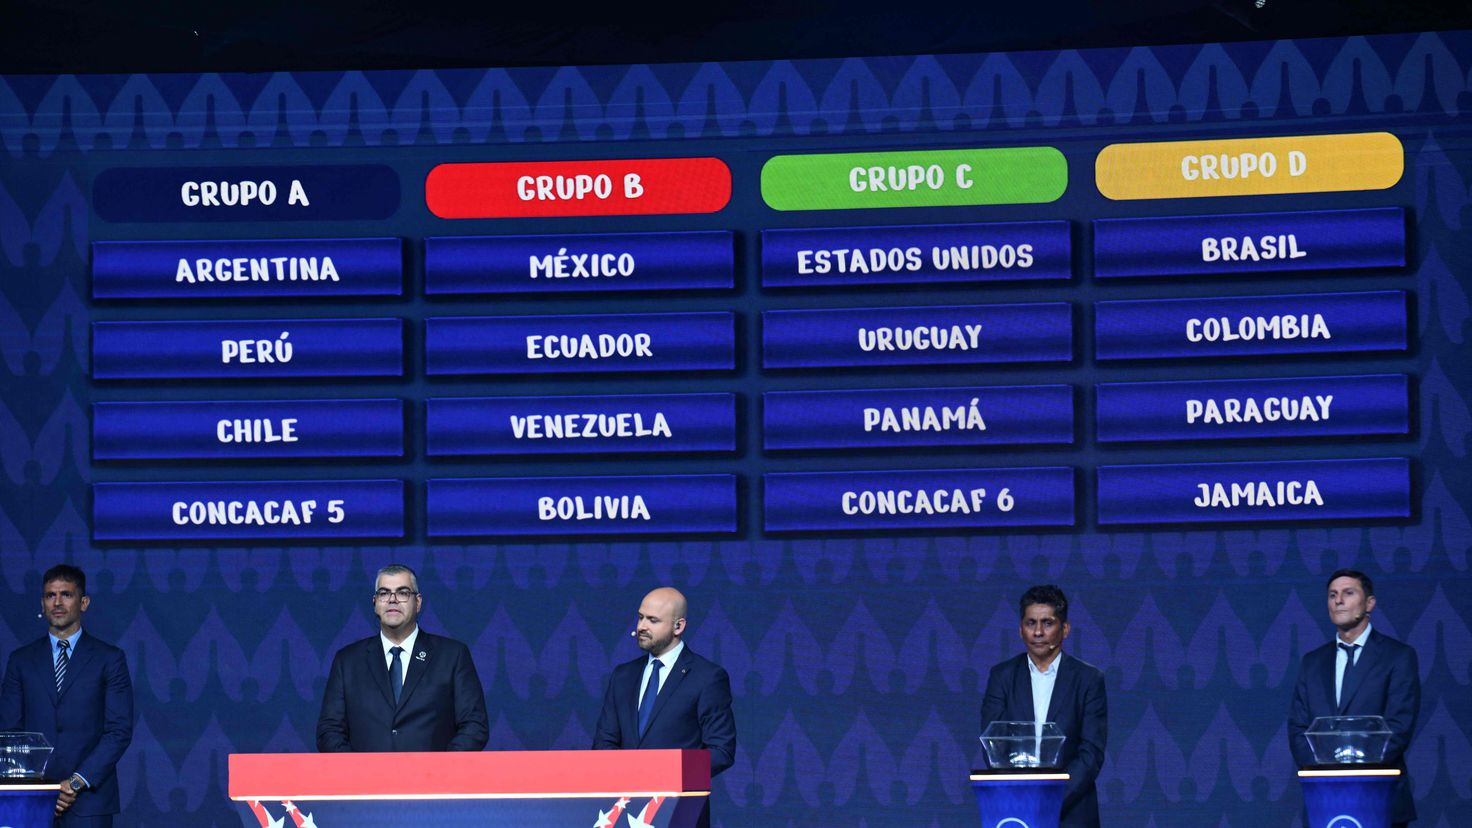 Copa América 2024: confira os grupos e calendário do torneio